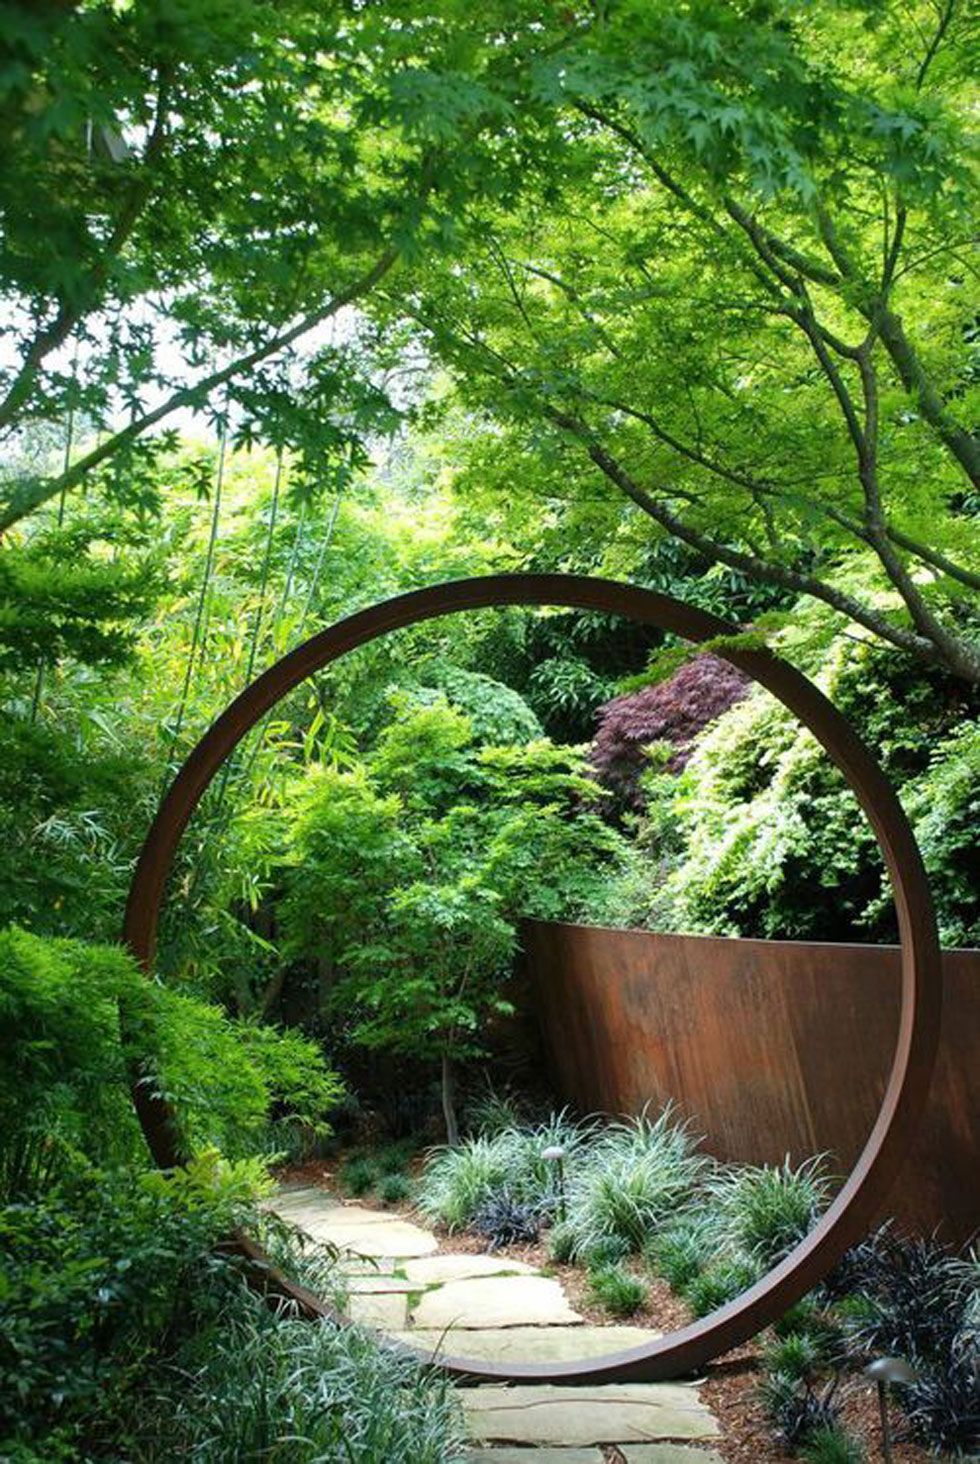 The Art of Creating a Beautiful Backyard Garden